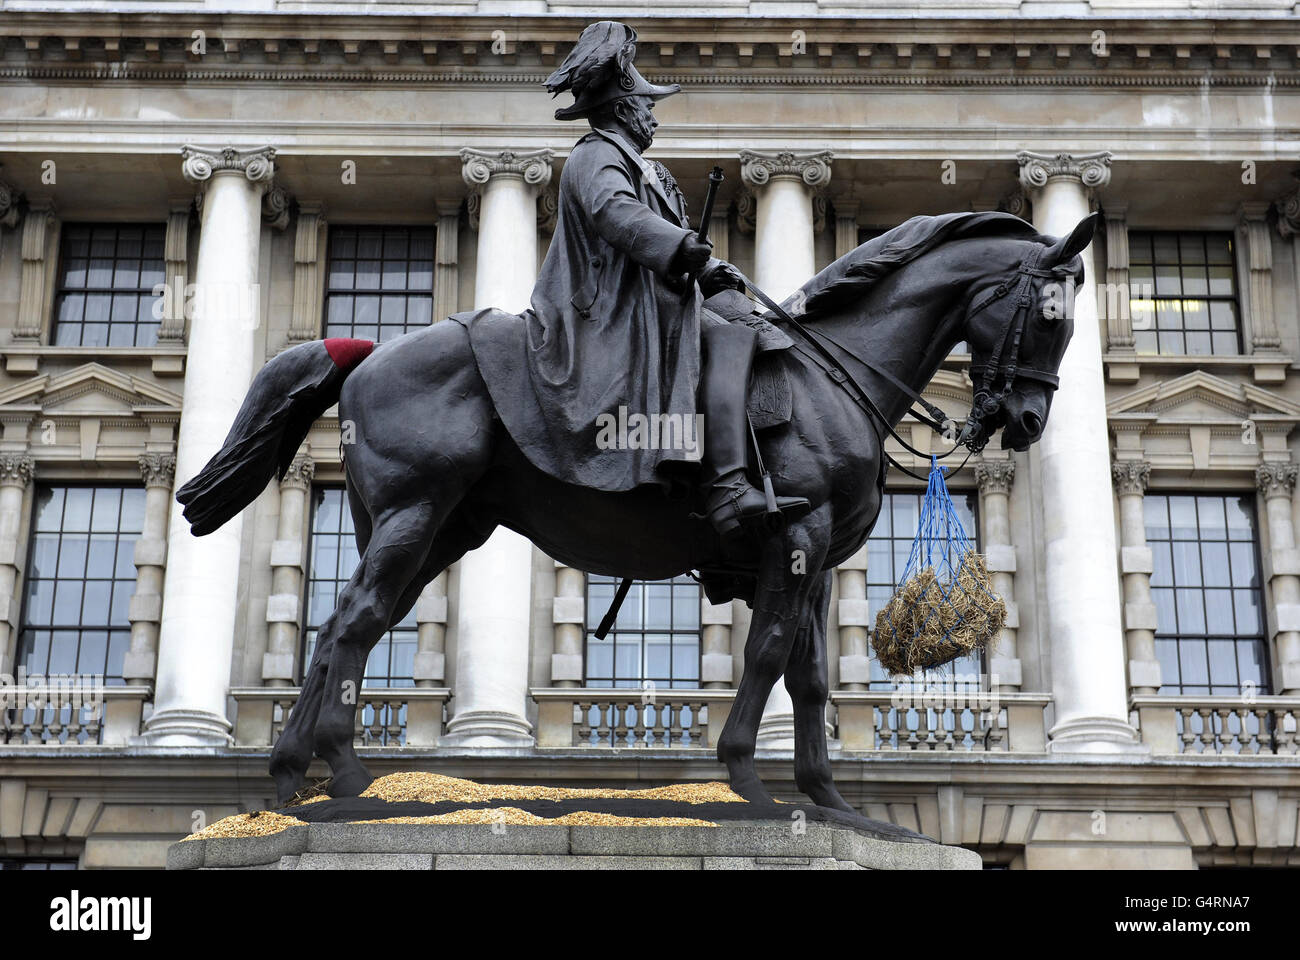 An einer Statue des Feldmarschalls, seiner Königlichen Hoheit George, Duke of Cambridge, Oberbefehlshaber der Britischen Armee 1856-1895 in Whitehall, London, ist ein Sack Heu und Sägemehl zu sehen. Stockfoto